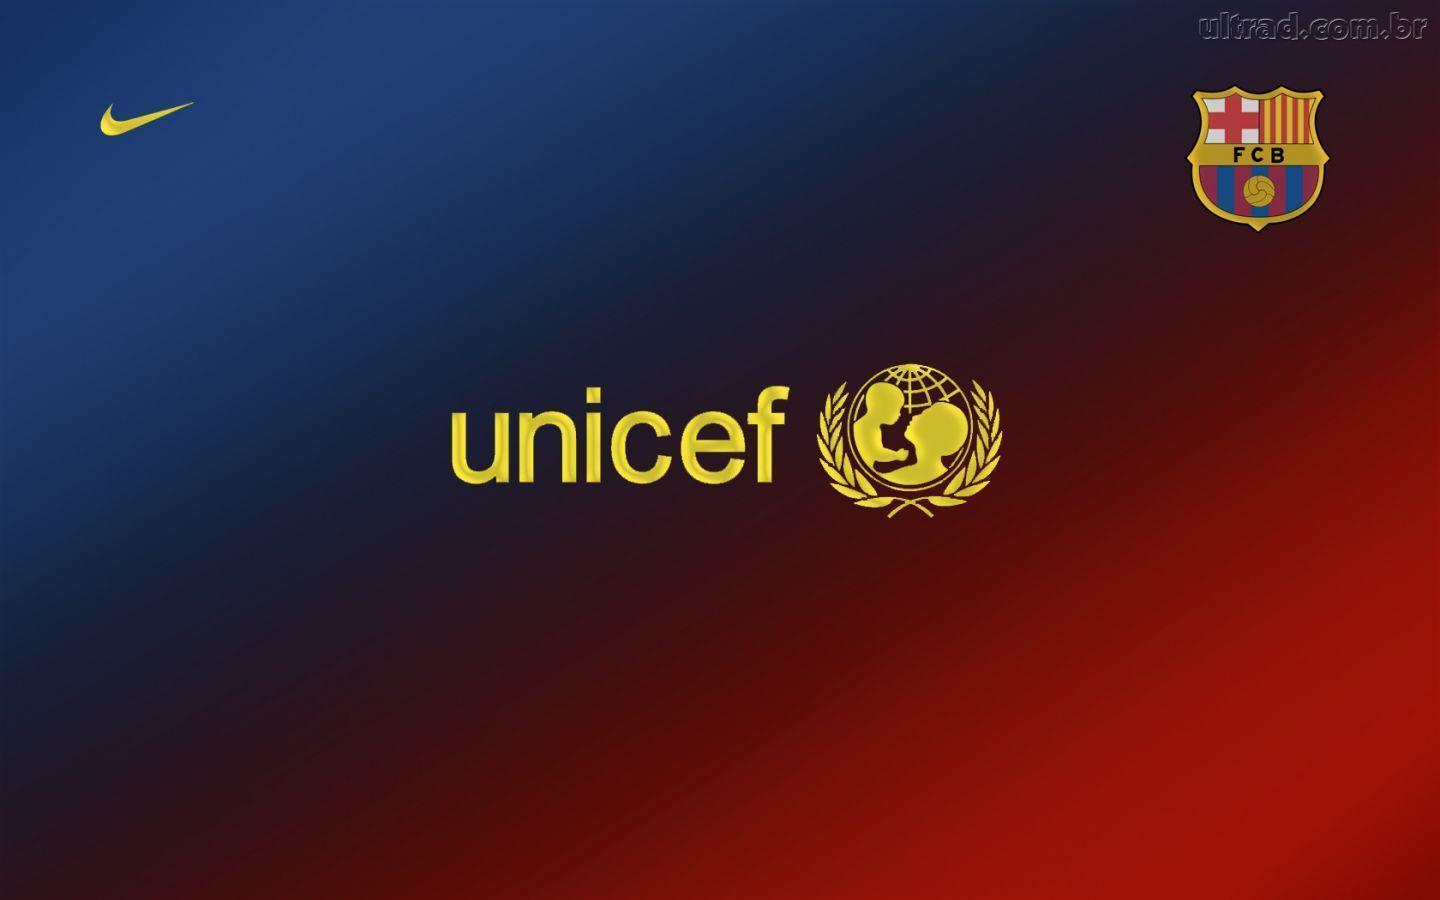 Unicef Barca Wallpaperhotos